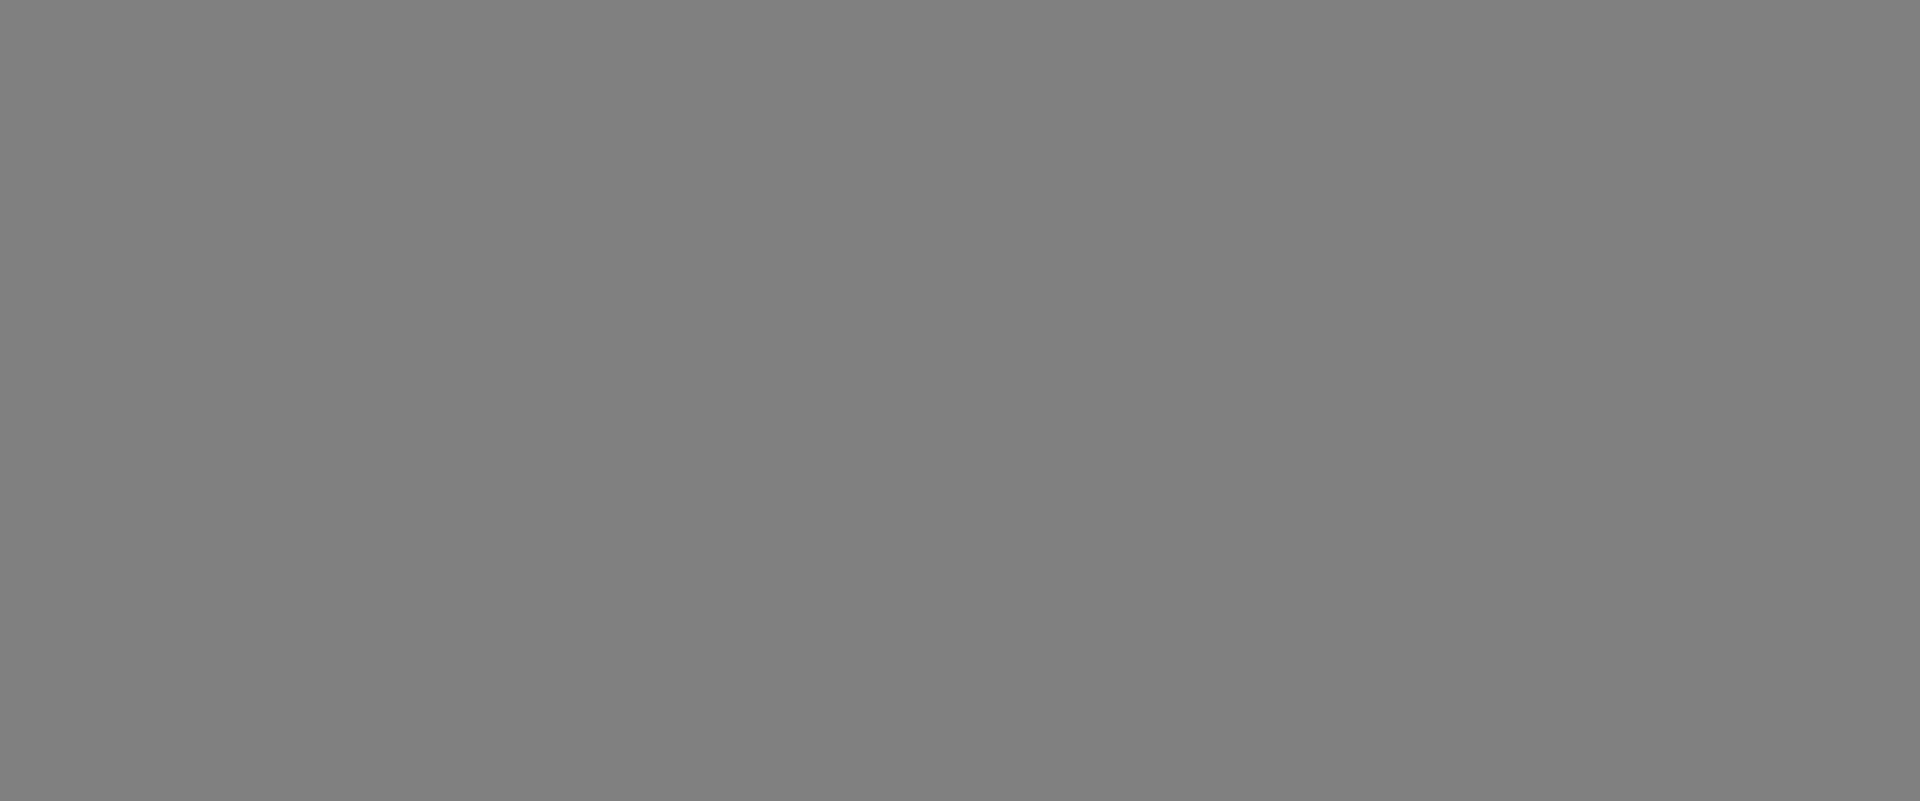 Rio de Janeiro - RJ  - 01/07/2020 - Geral - Secretaria de Ordem Publica com auxilio da Guarda Municipal e Policia Militar, fez uma serie de demoliçoes de construçoes irregulares na Gardenia Azul, zona oeste do Rio -  Foto Reginaldo Pimenta / Agencia O Dia